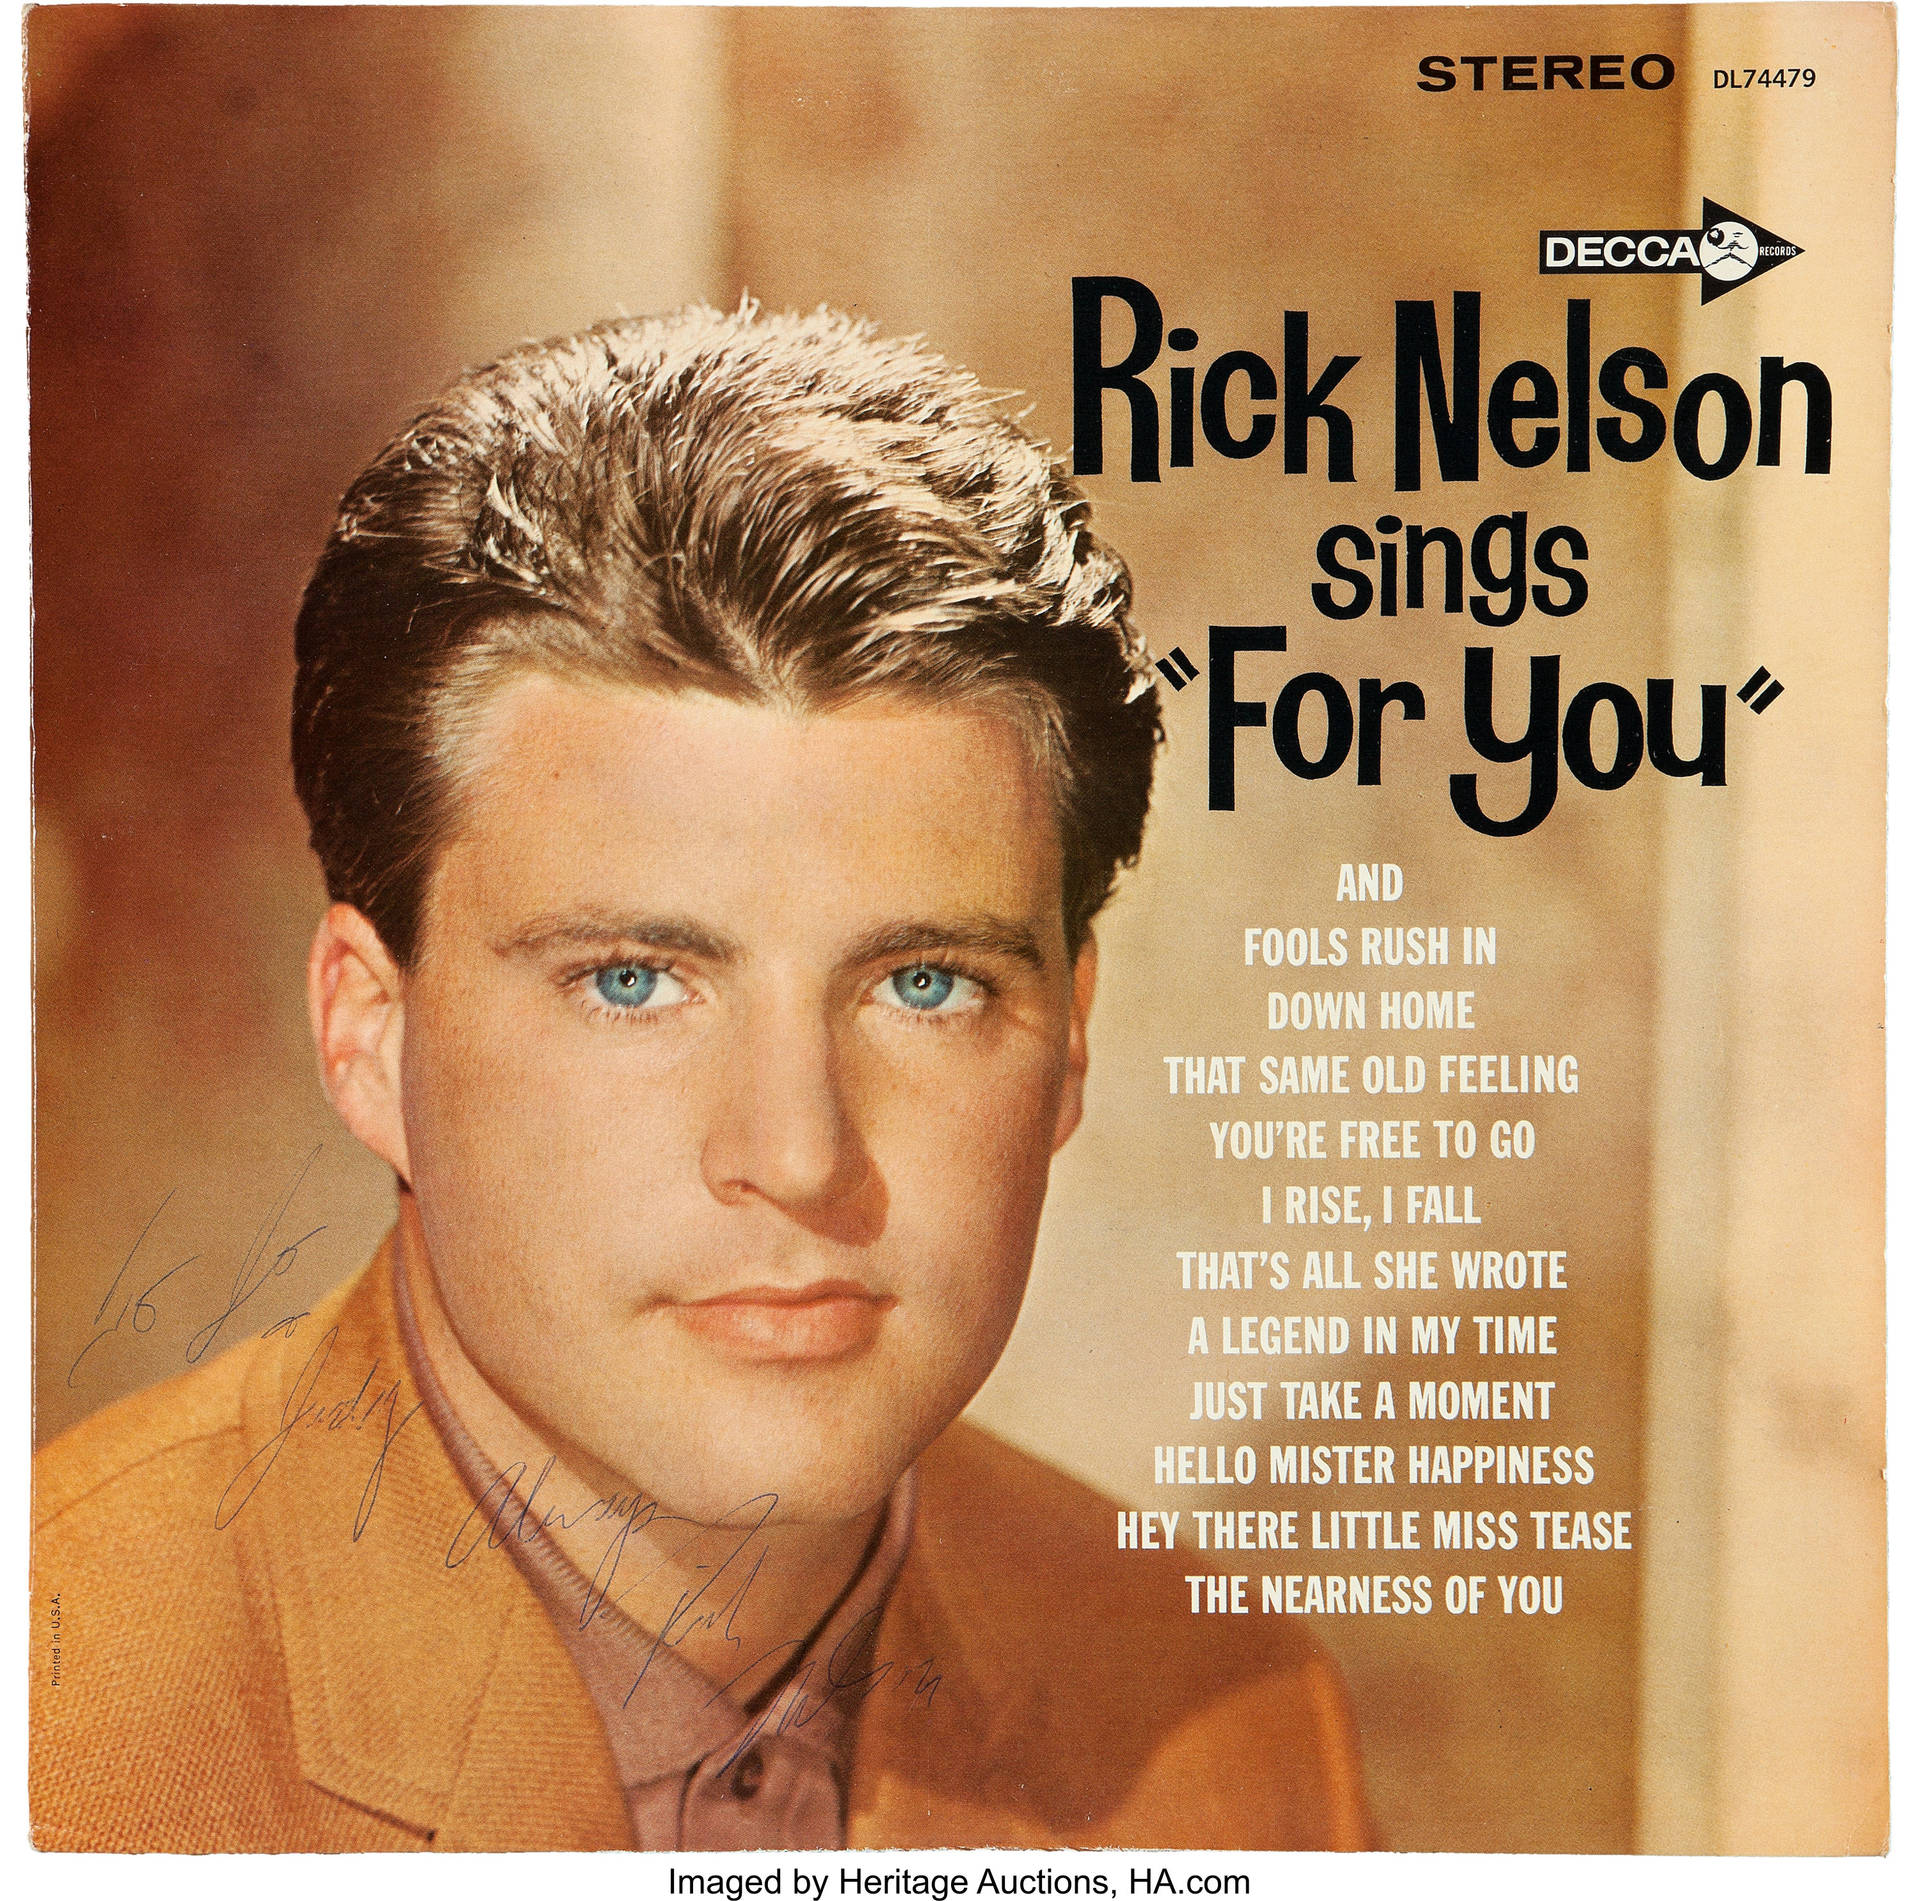 Rick Nelson Sings For You Vinyl Cover Wallpaper